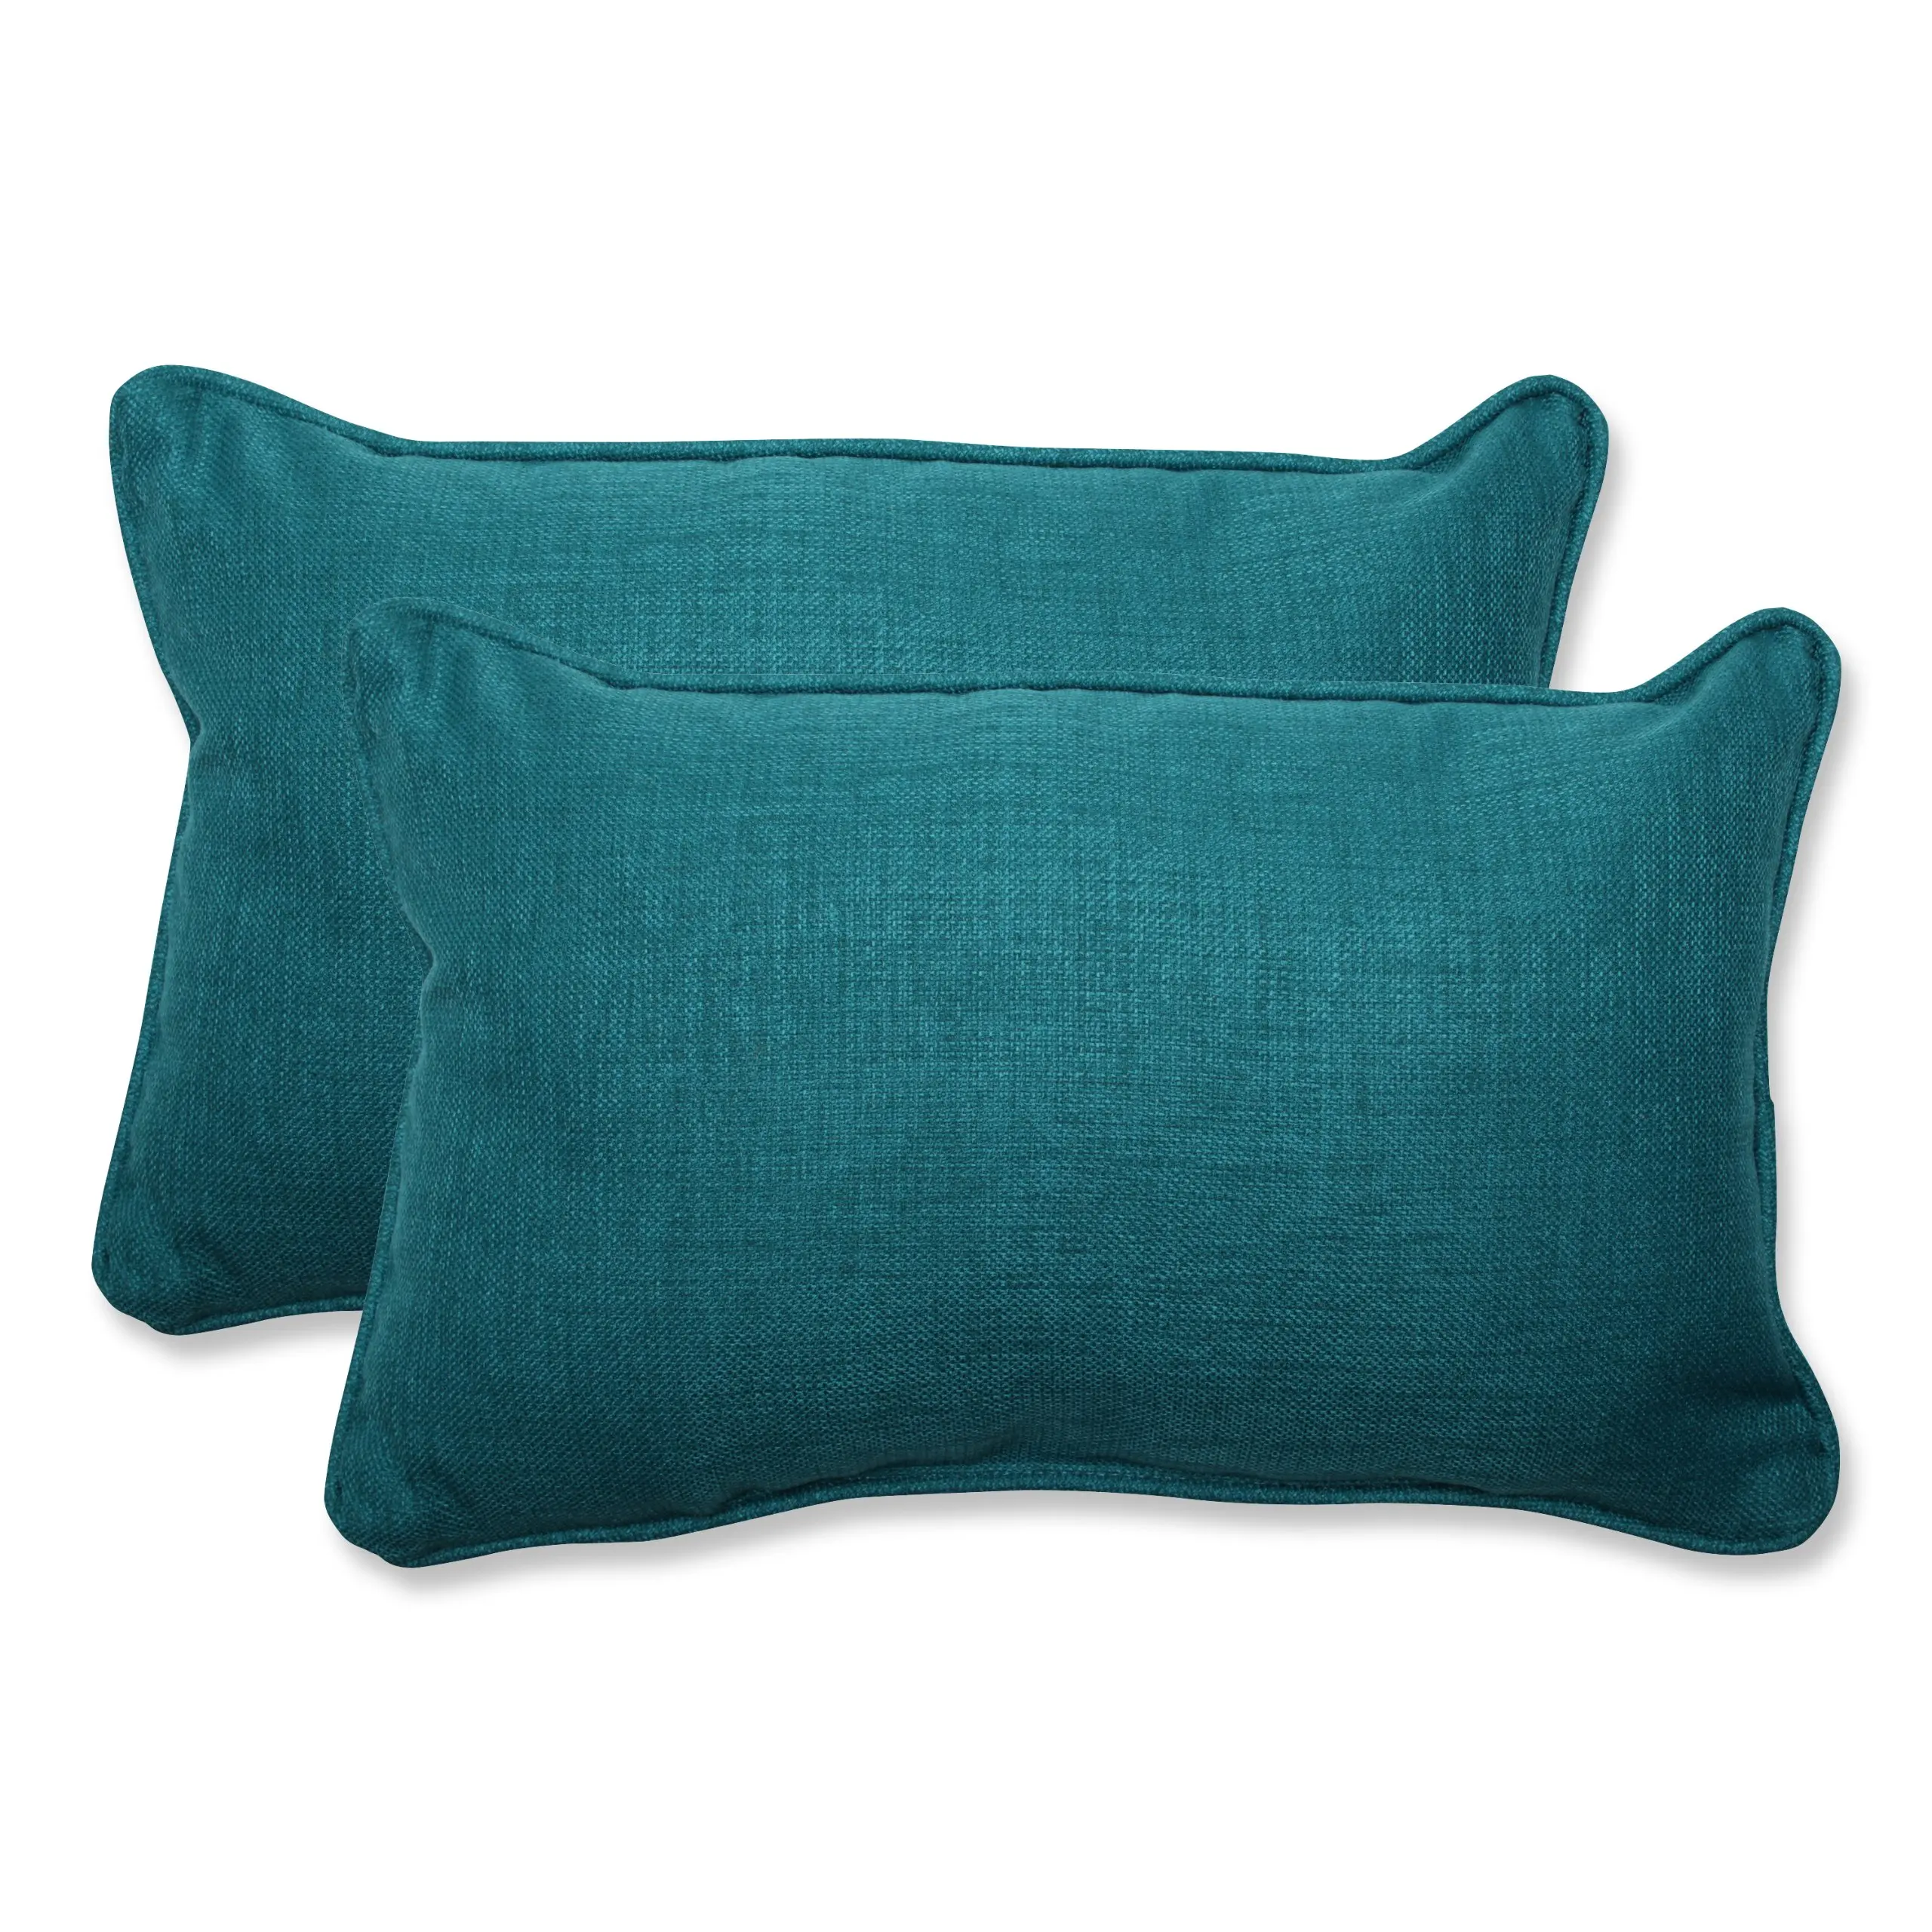 Купить подушку прямоугольную. Подушка perfect Pillow. Костюм подушки. Темно зеленая большая подушка. Подушка для прямоугольной ванной.